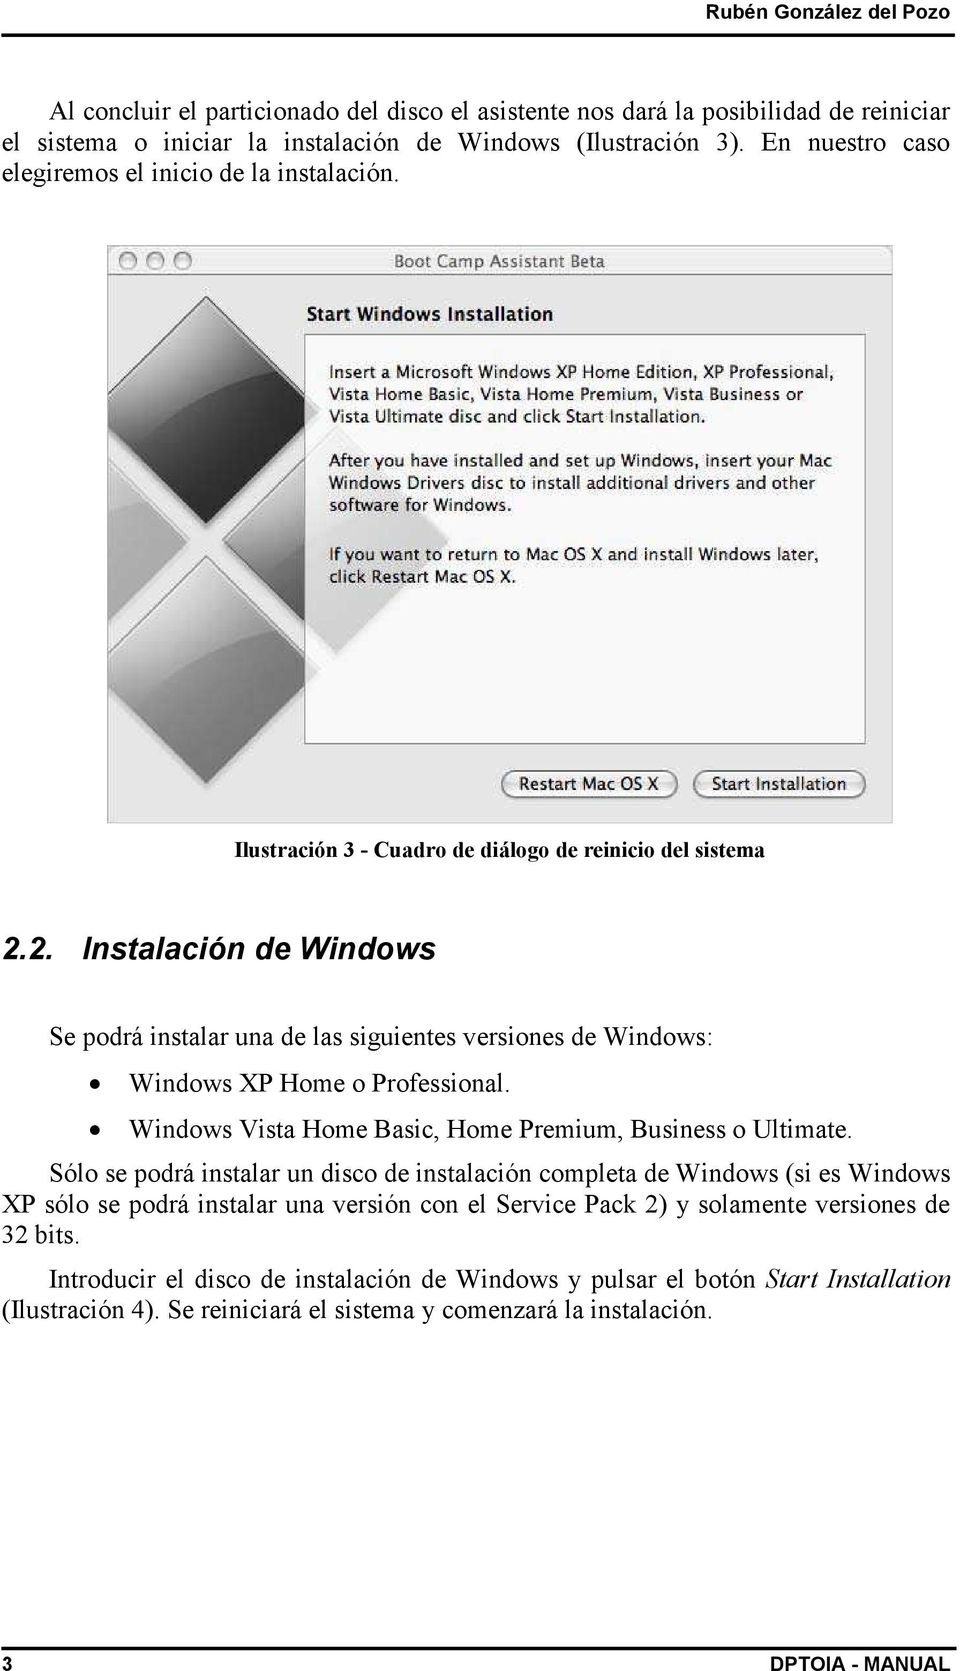 2. Instalación de Windows Se podrá instalar una de las siguientes versiones de Windows: Windows XP Home o Professional. Windows Vista Home Basic, Home Premium, Business o Ultimate.